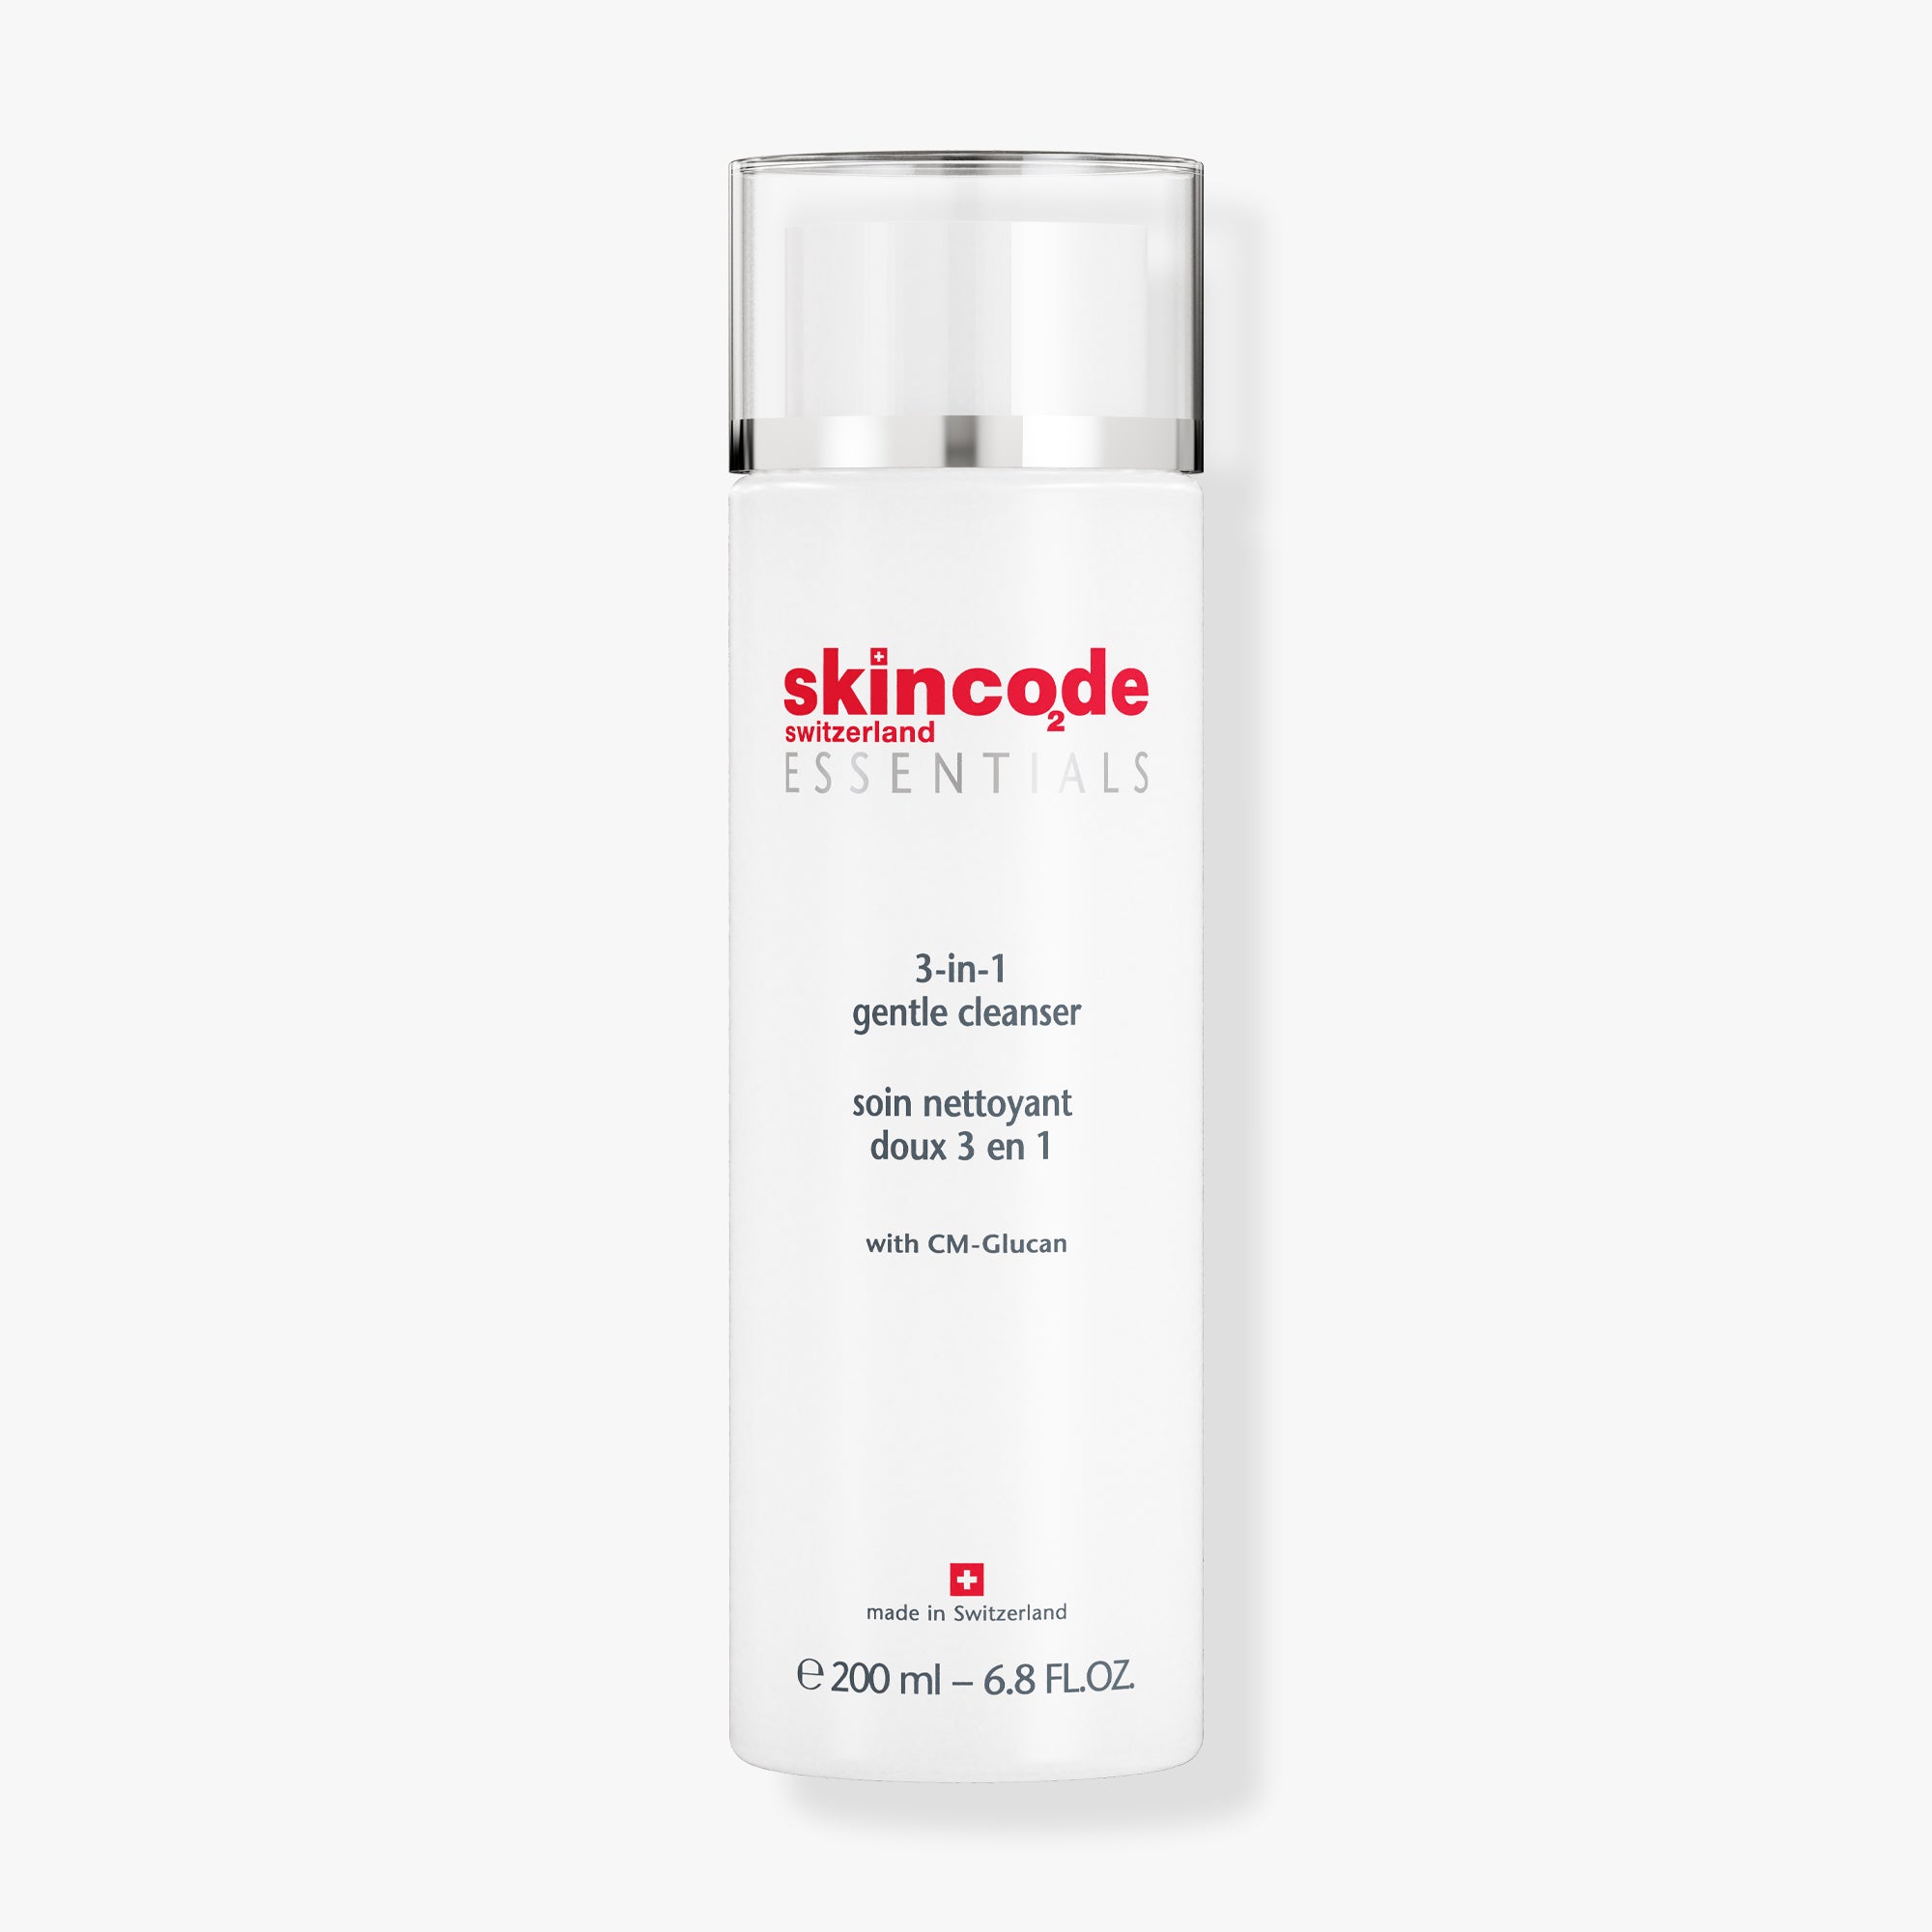 SkinCode Essentials, 3-in-1 Gentle Cleanser